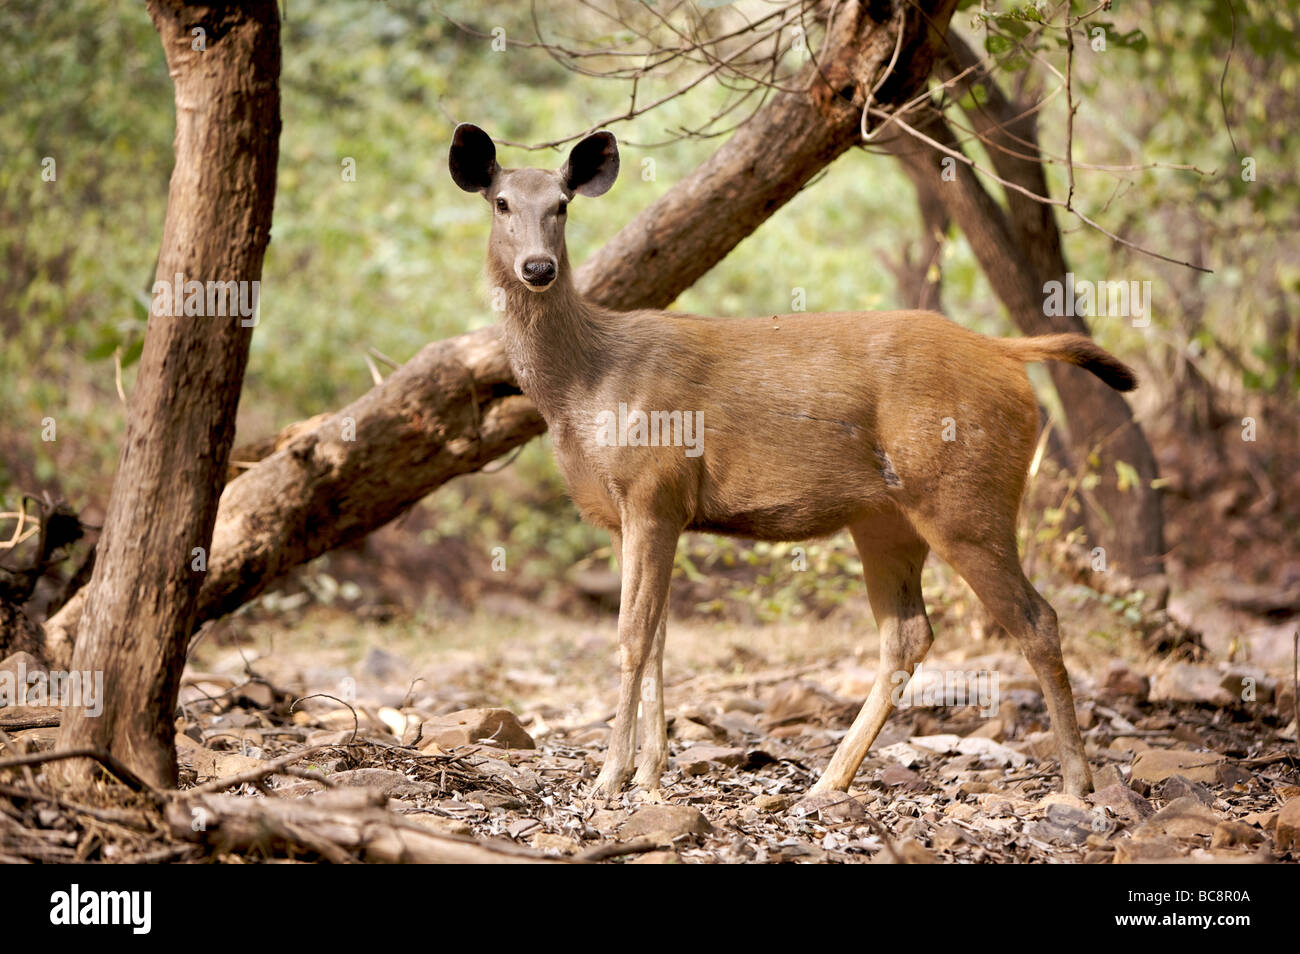 Sambar deer hi-res stock photography and images - Alamy